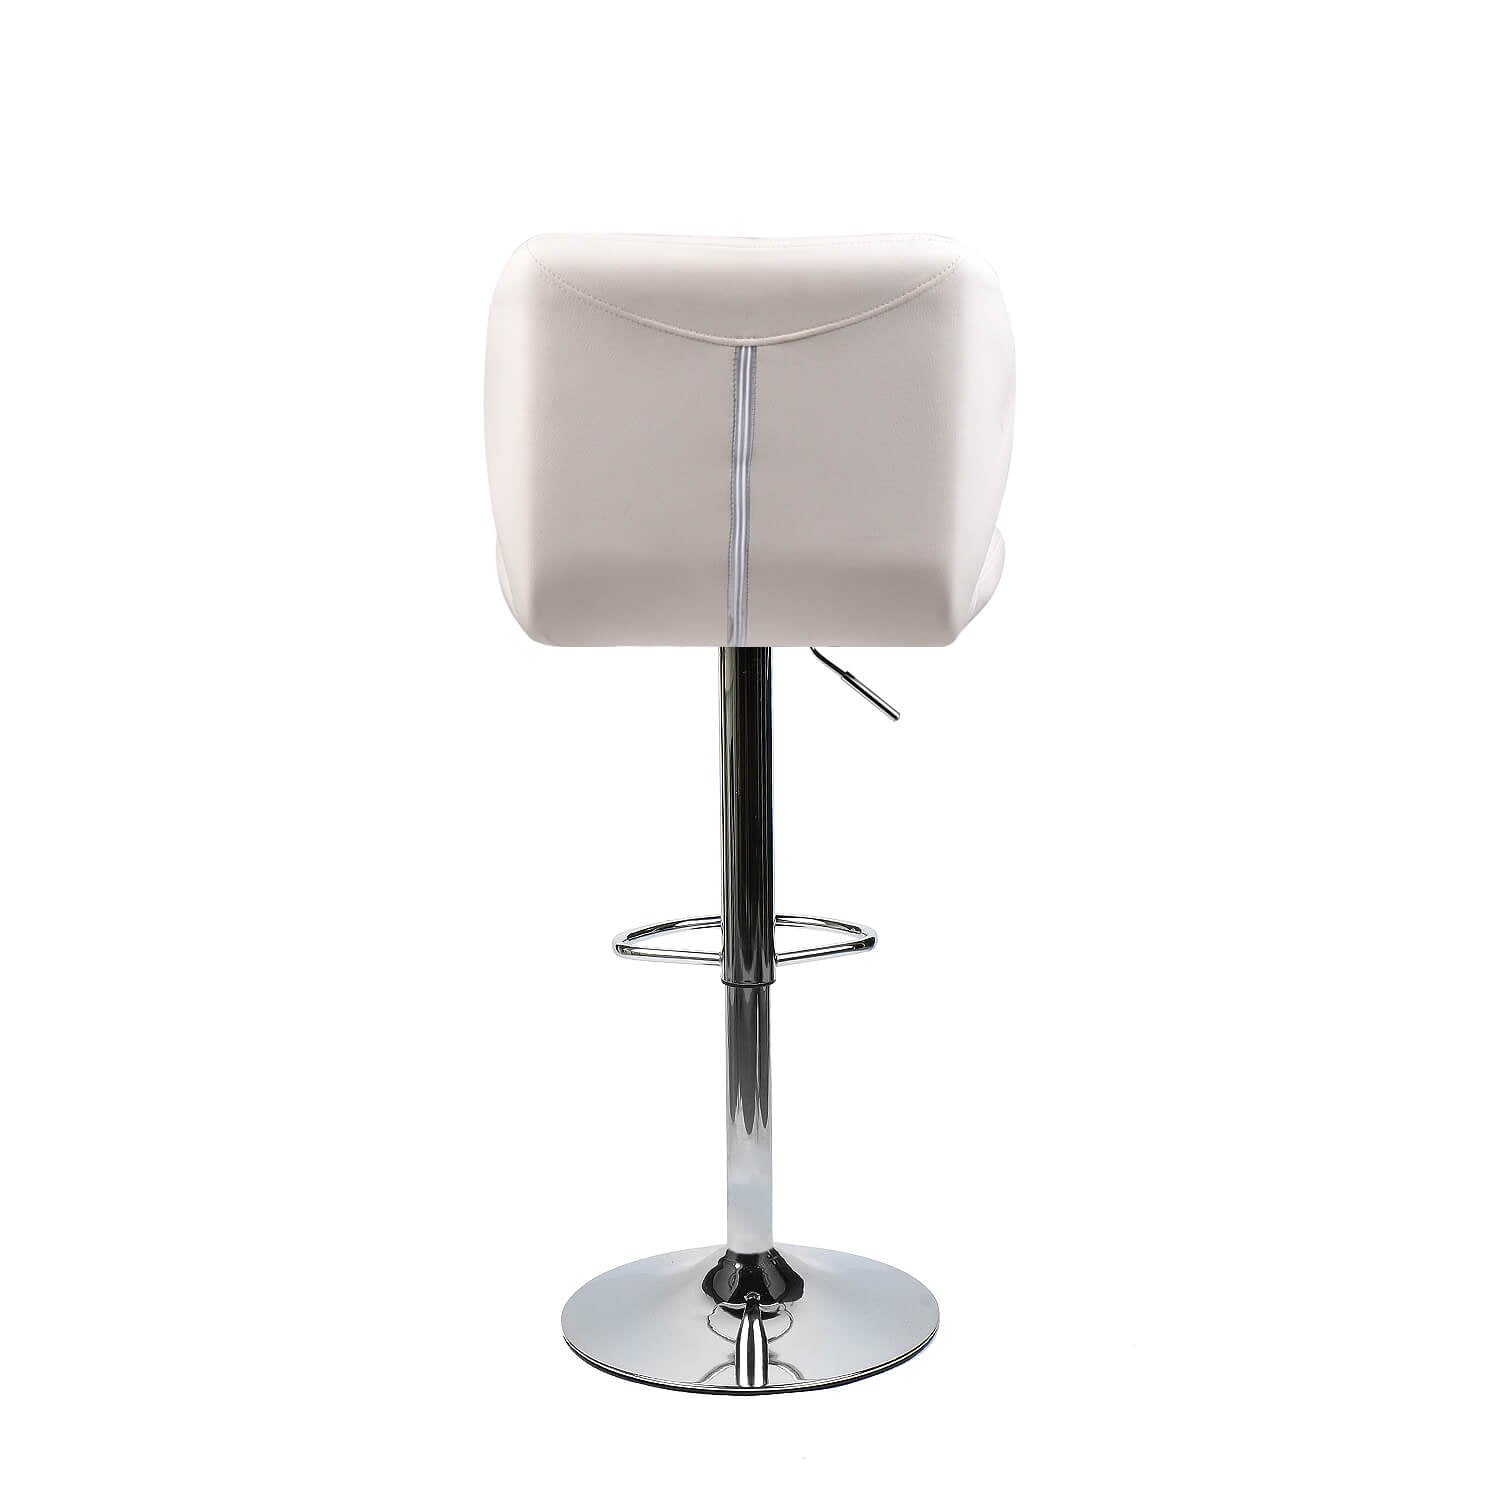 Back of Elecwish white bar stool OW001